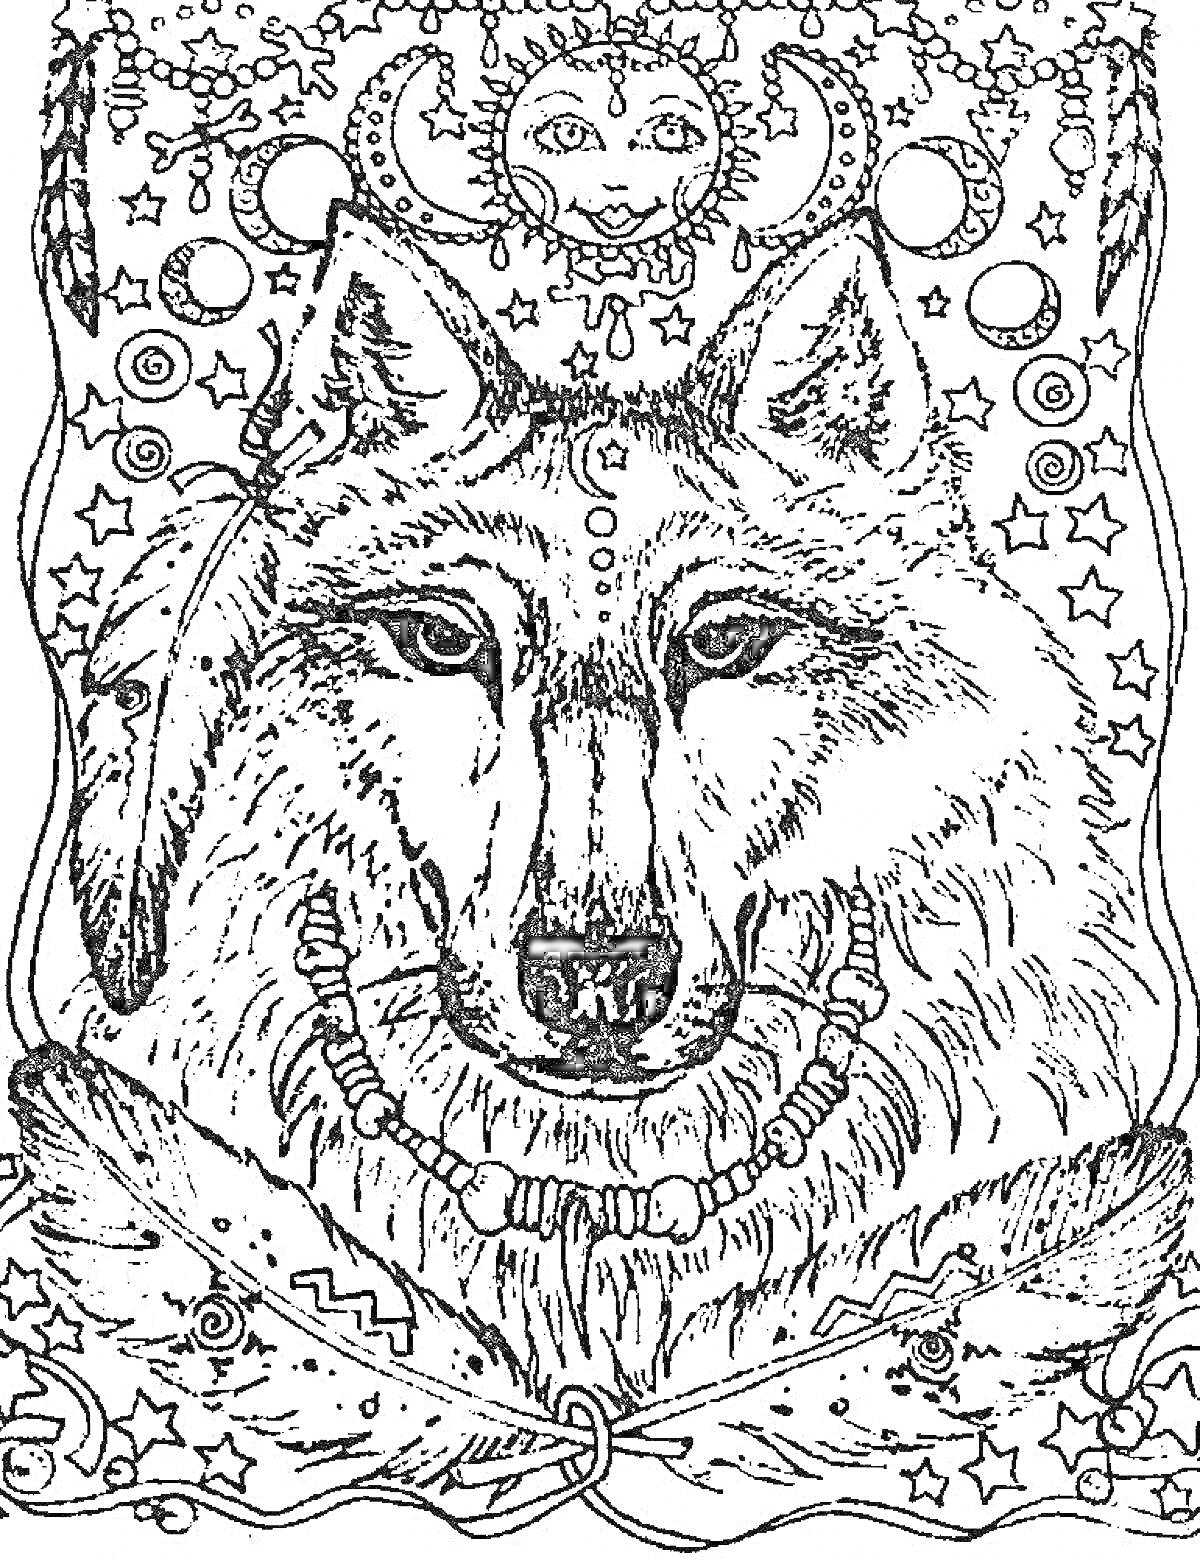 РаскраскаВолк с элементами украшений и символов. Волк изображен с ожерельем, перьями, звездами, луной, солнцем и геометрическими узорами на фоне.